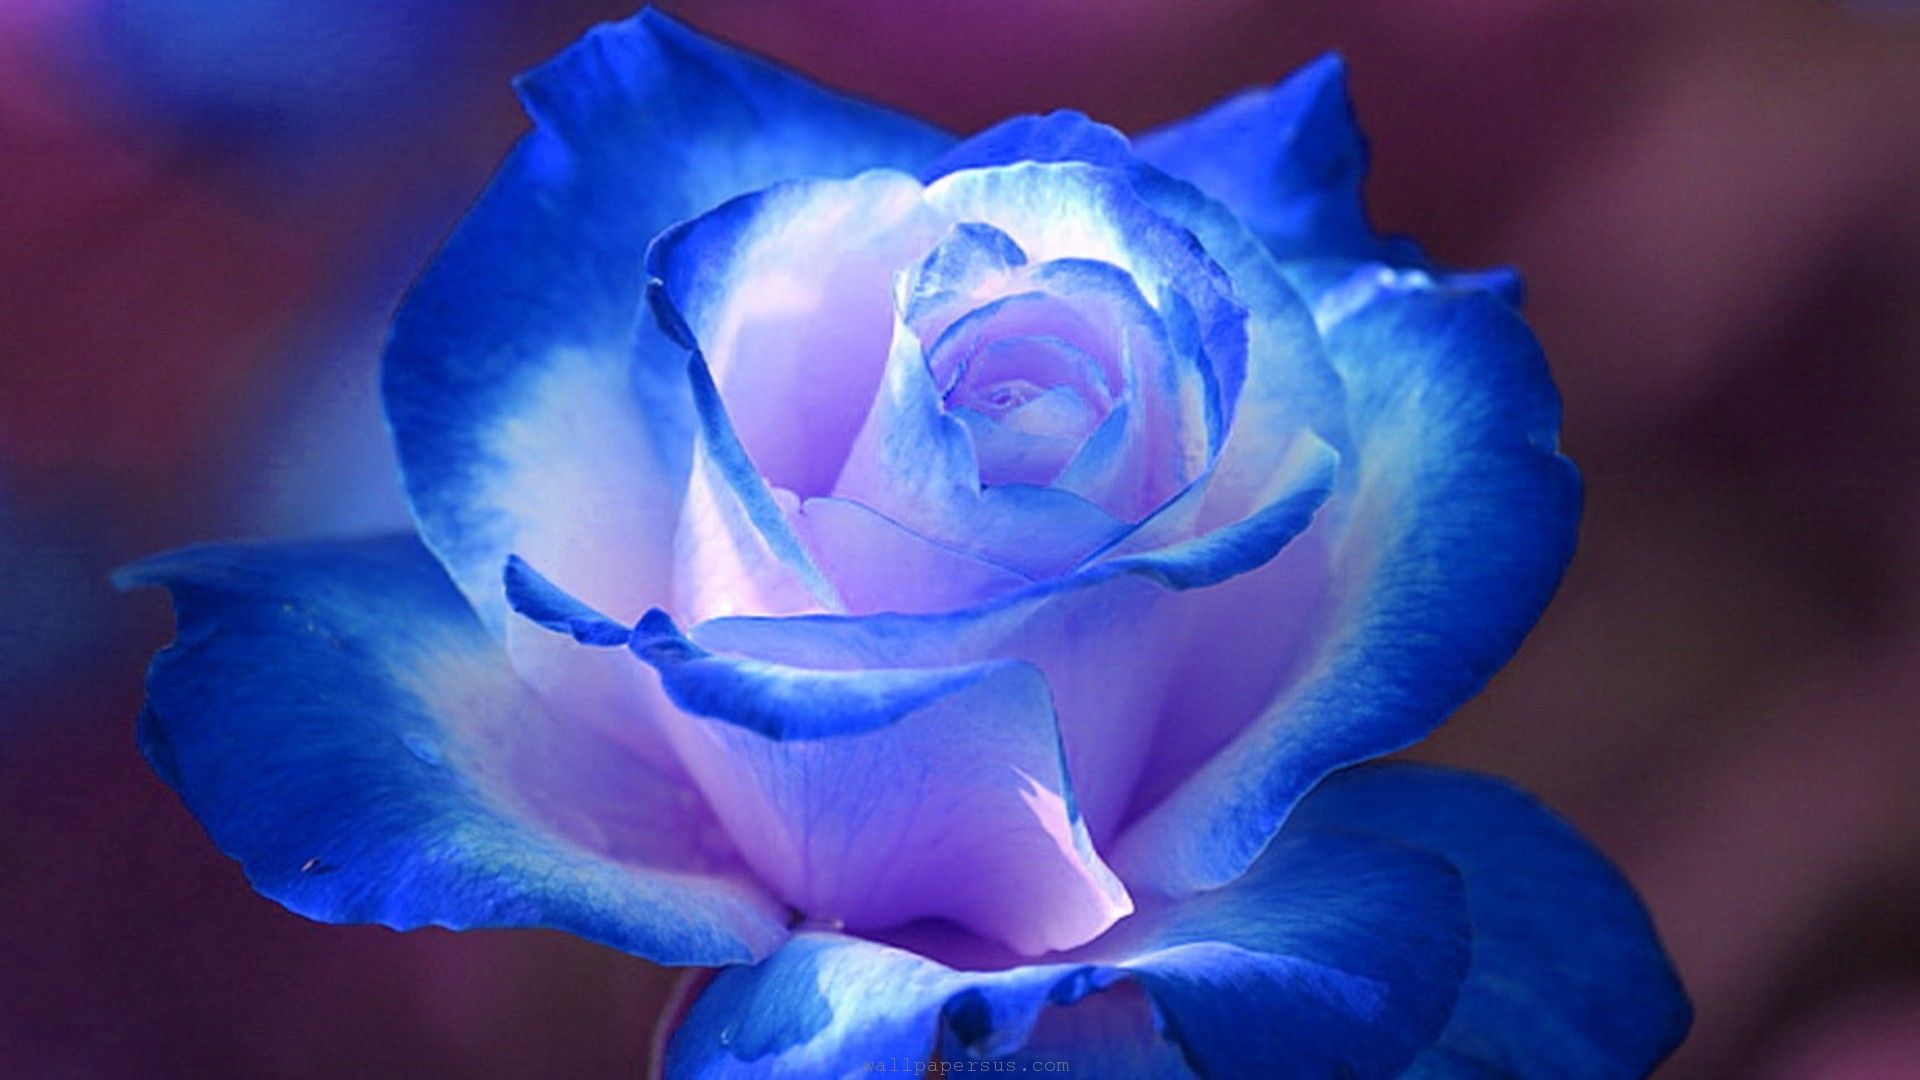 Hoa hồng xanh ảnh đẹp nhất